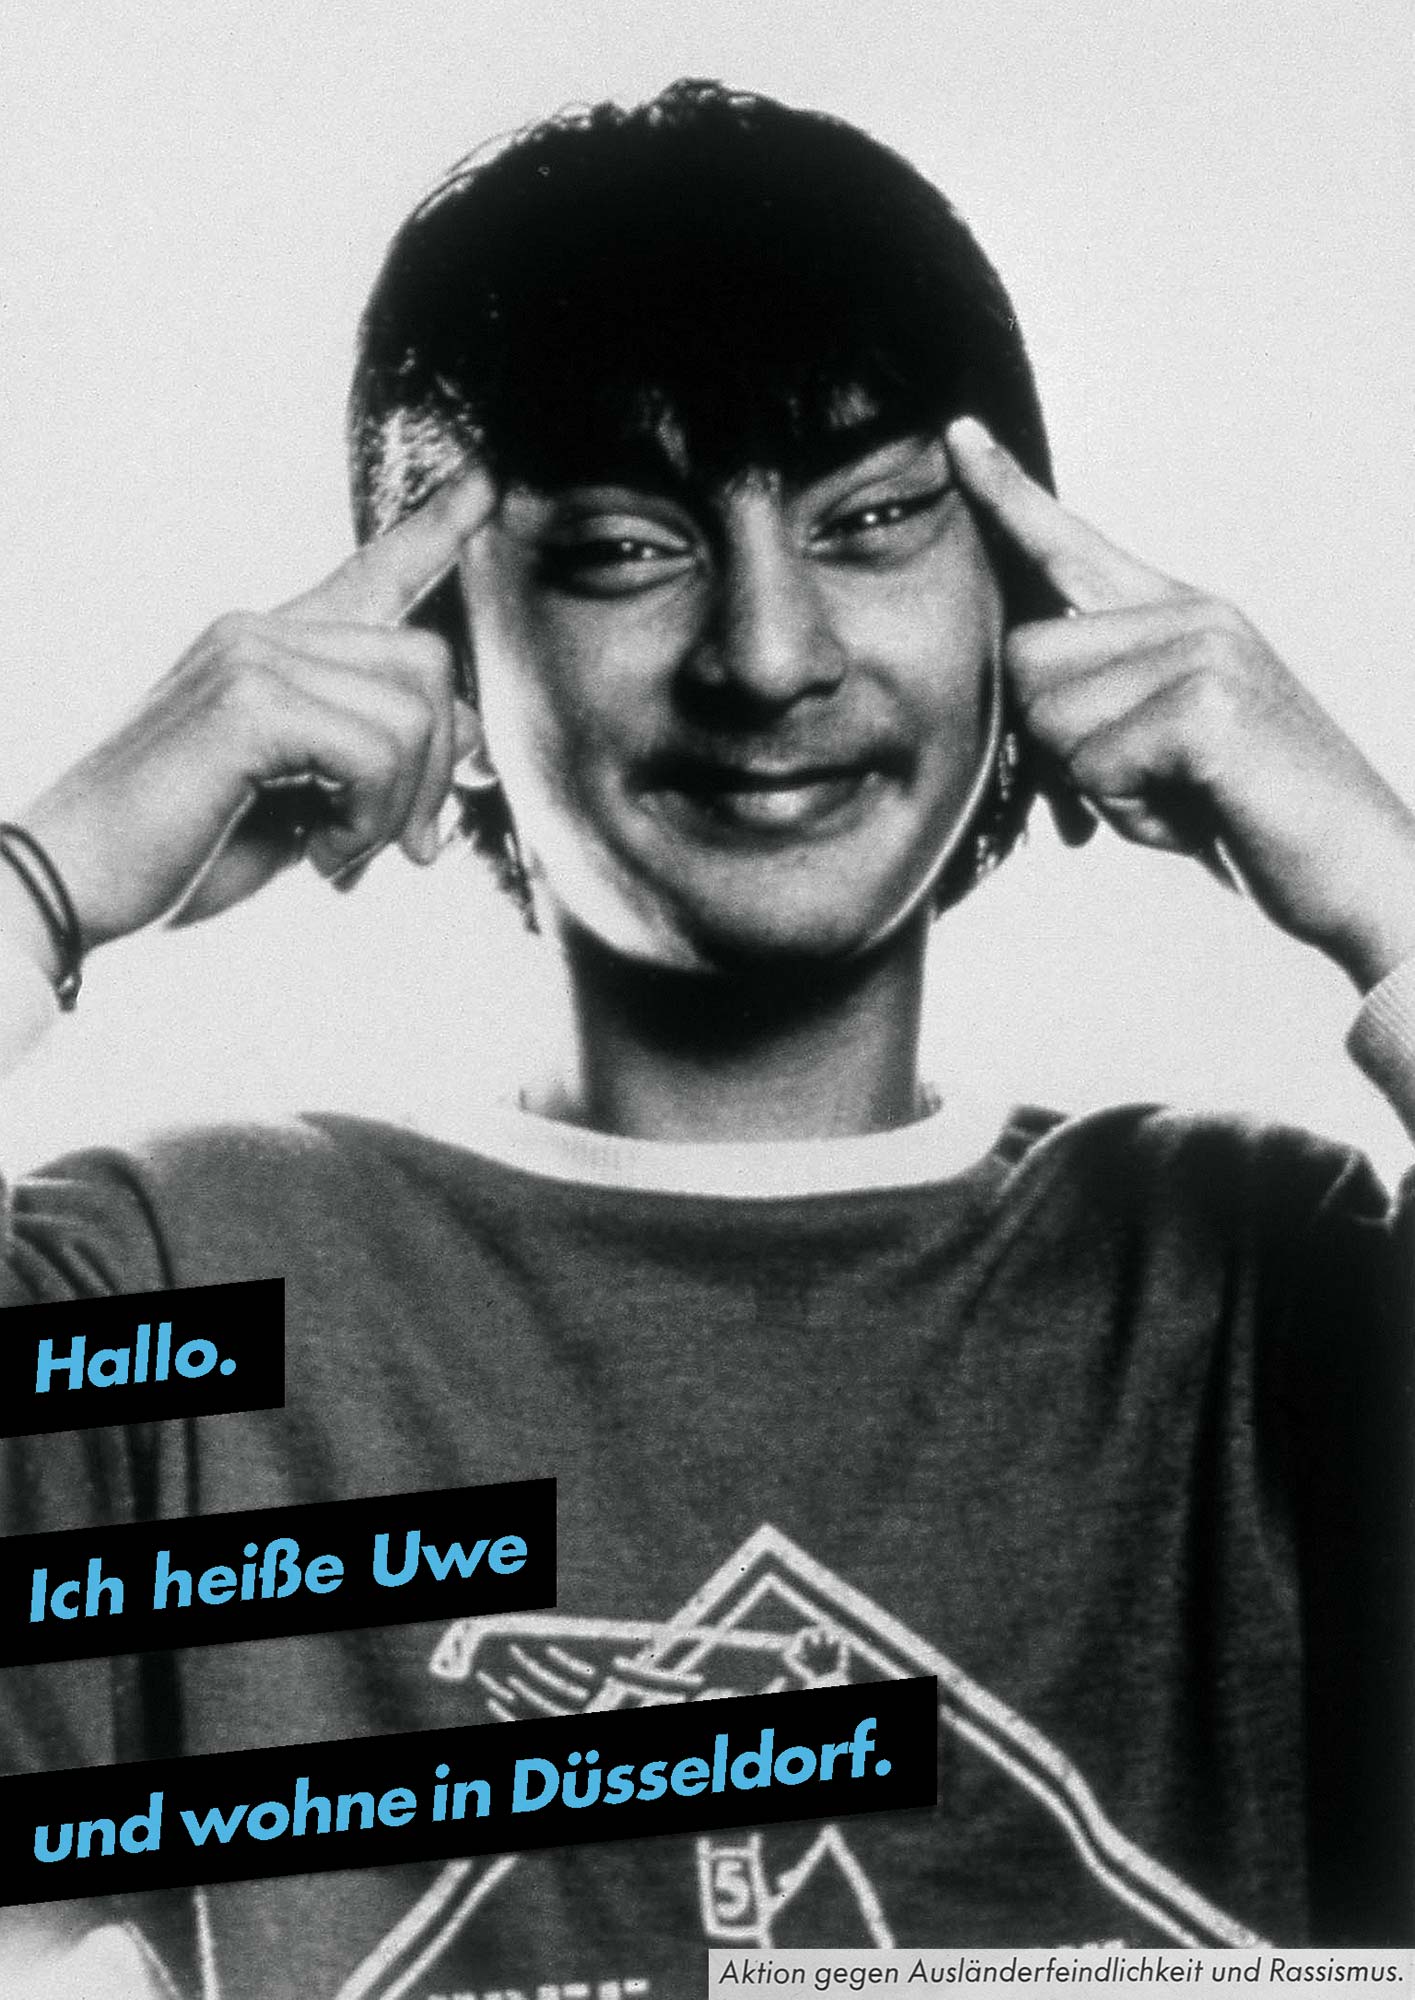 Gestaltet: Eva Cervinka, Udo Bechmann, Betreut: Uwe Loesch, Titel: Hallo. Ich heiße Uwe und wohne in Düsseldorf., Jahr: 1989